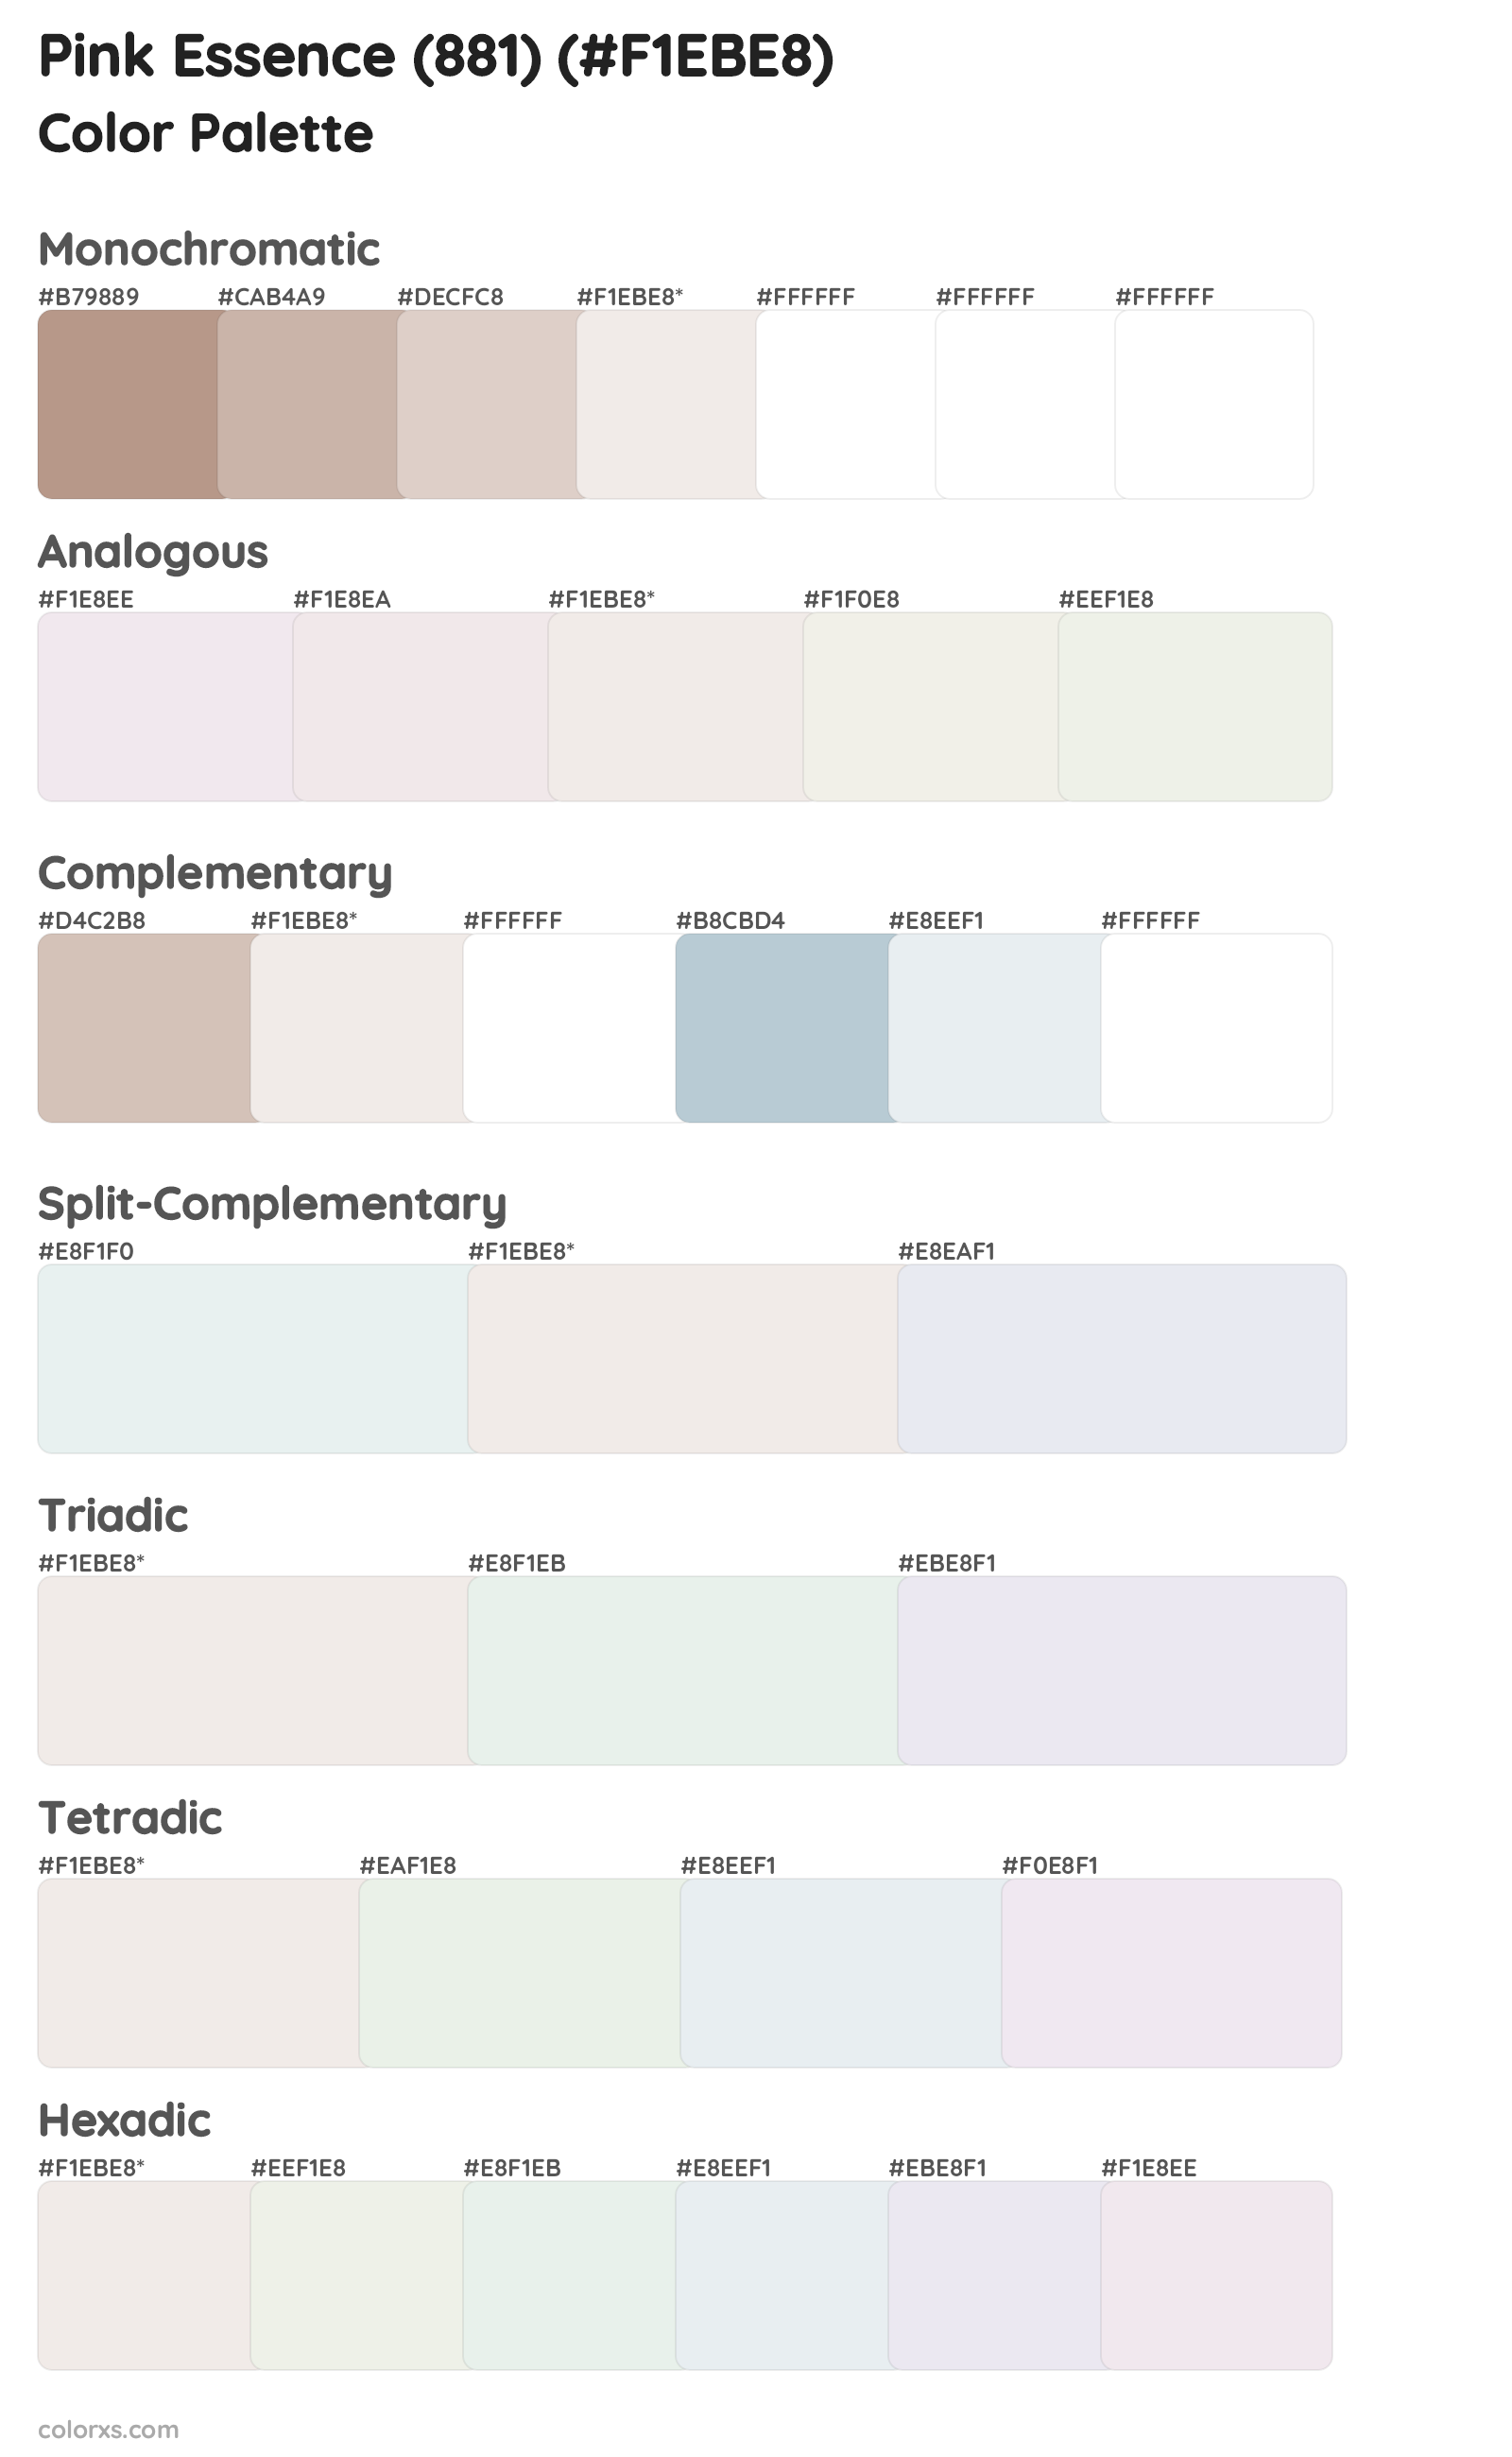 Pink Essence (881) Color Scheme Palettes